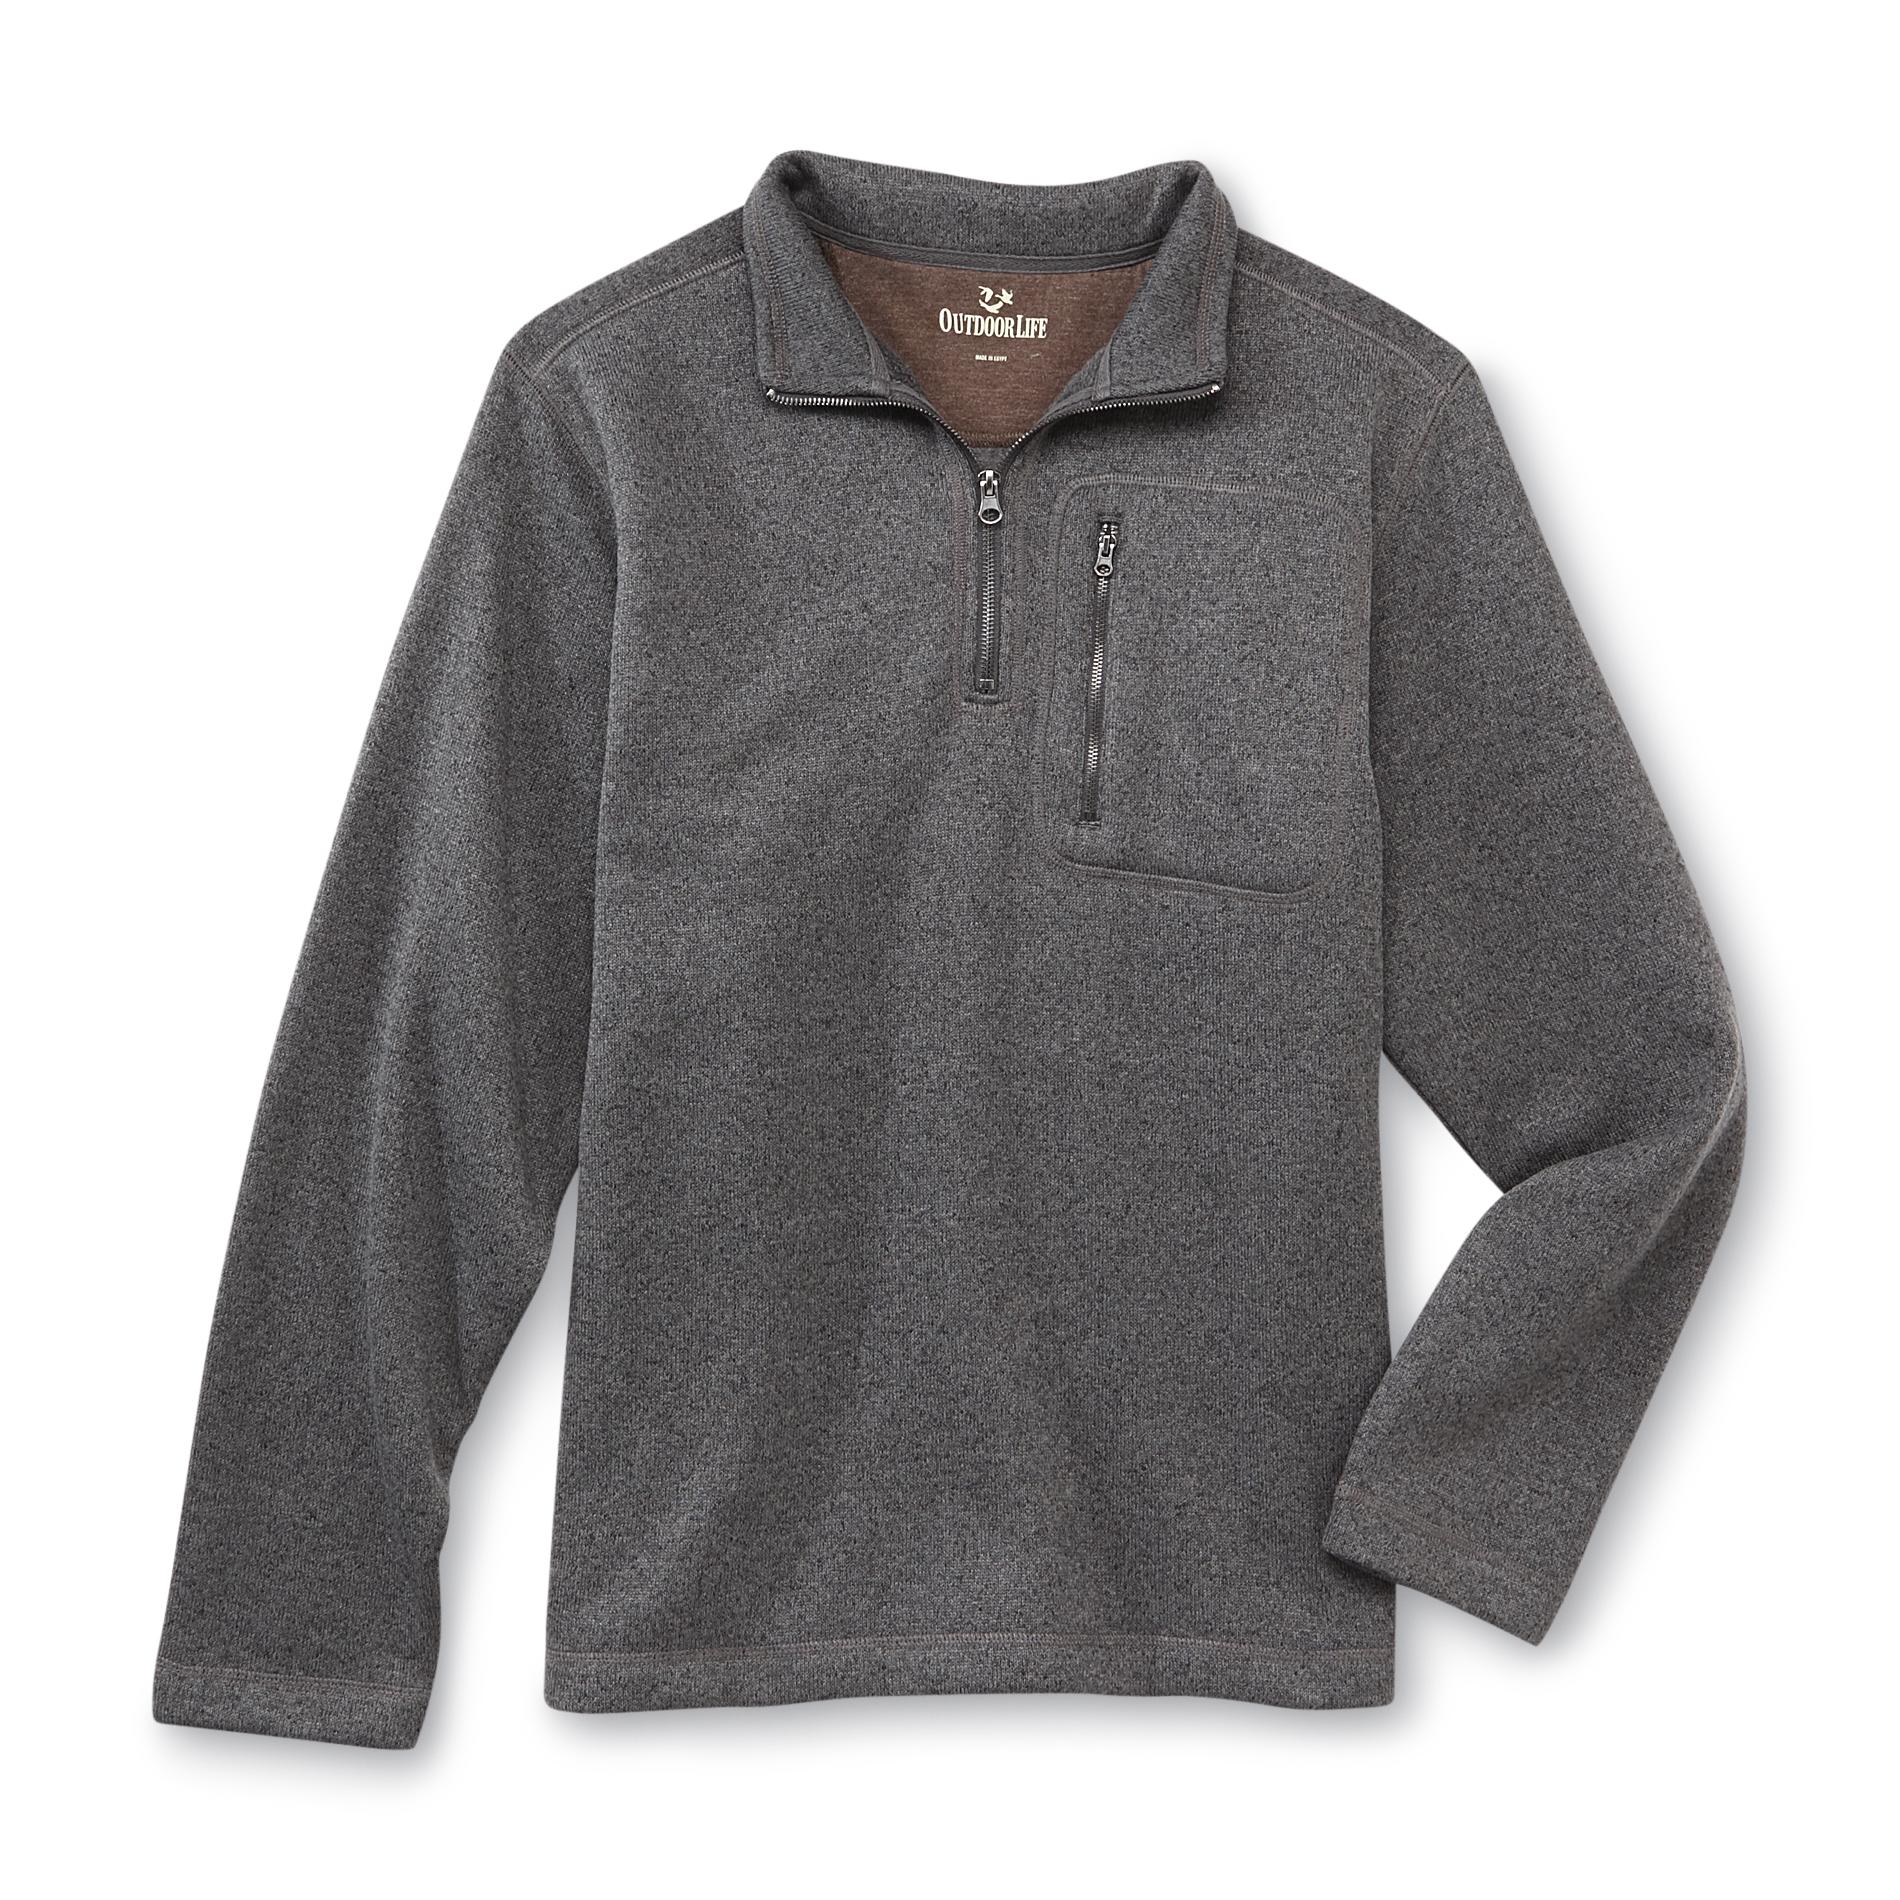 Outdoor Life Men's Quarter-Zip Pullover Sweater